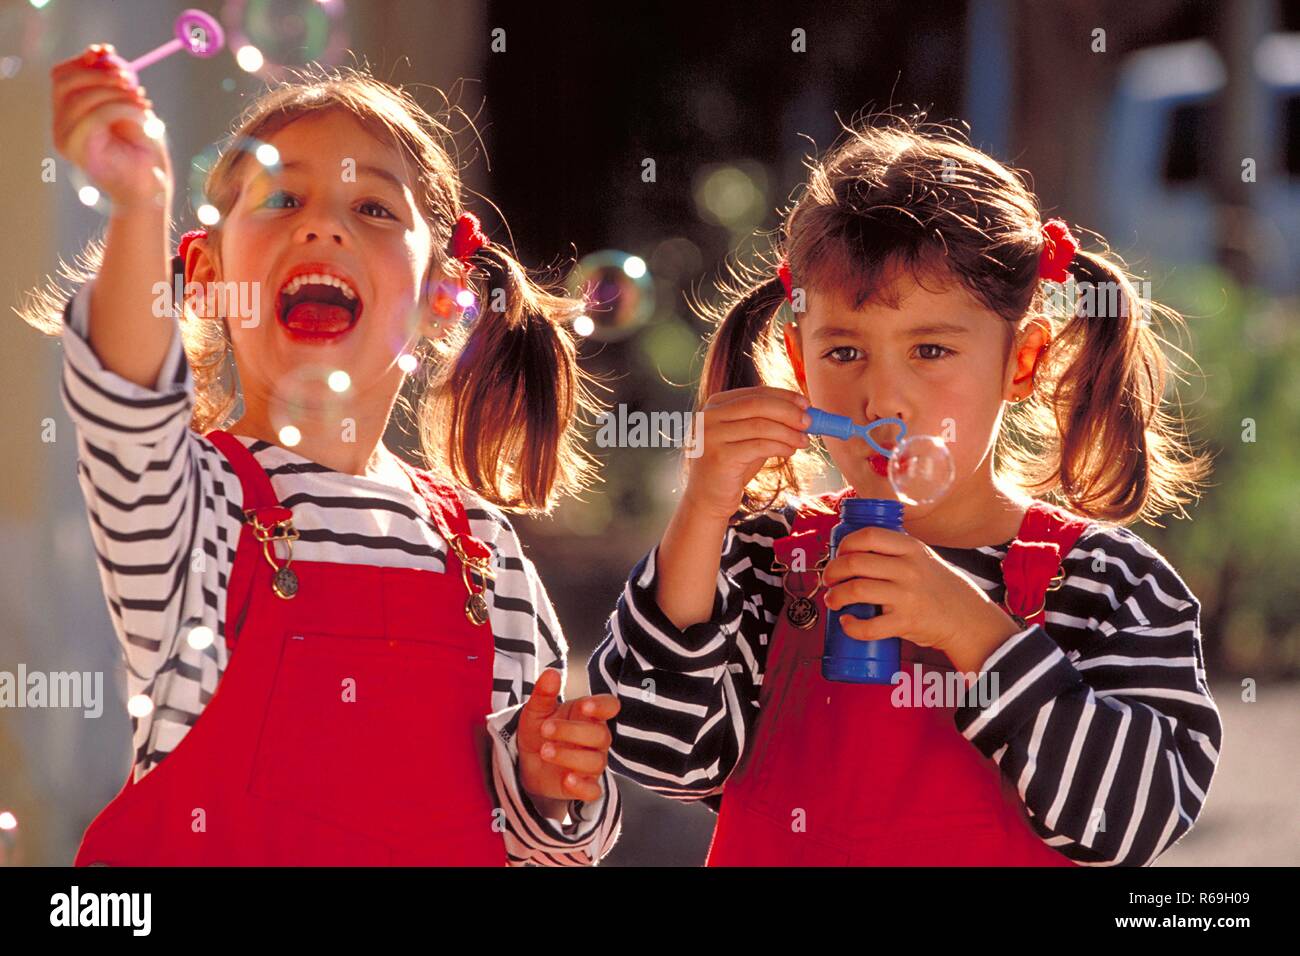 Porträt, Halbfigur, zwei 5 Jahre alte Zwillings-Maedchen mit kurzen Zoepfen bekleidet mit gestreiftem T-Shirt und roter Latzhose halten kleine Flaschen in der Hand und Seifenblasen blasen Stockfoto